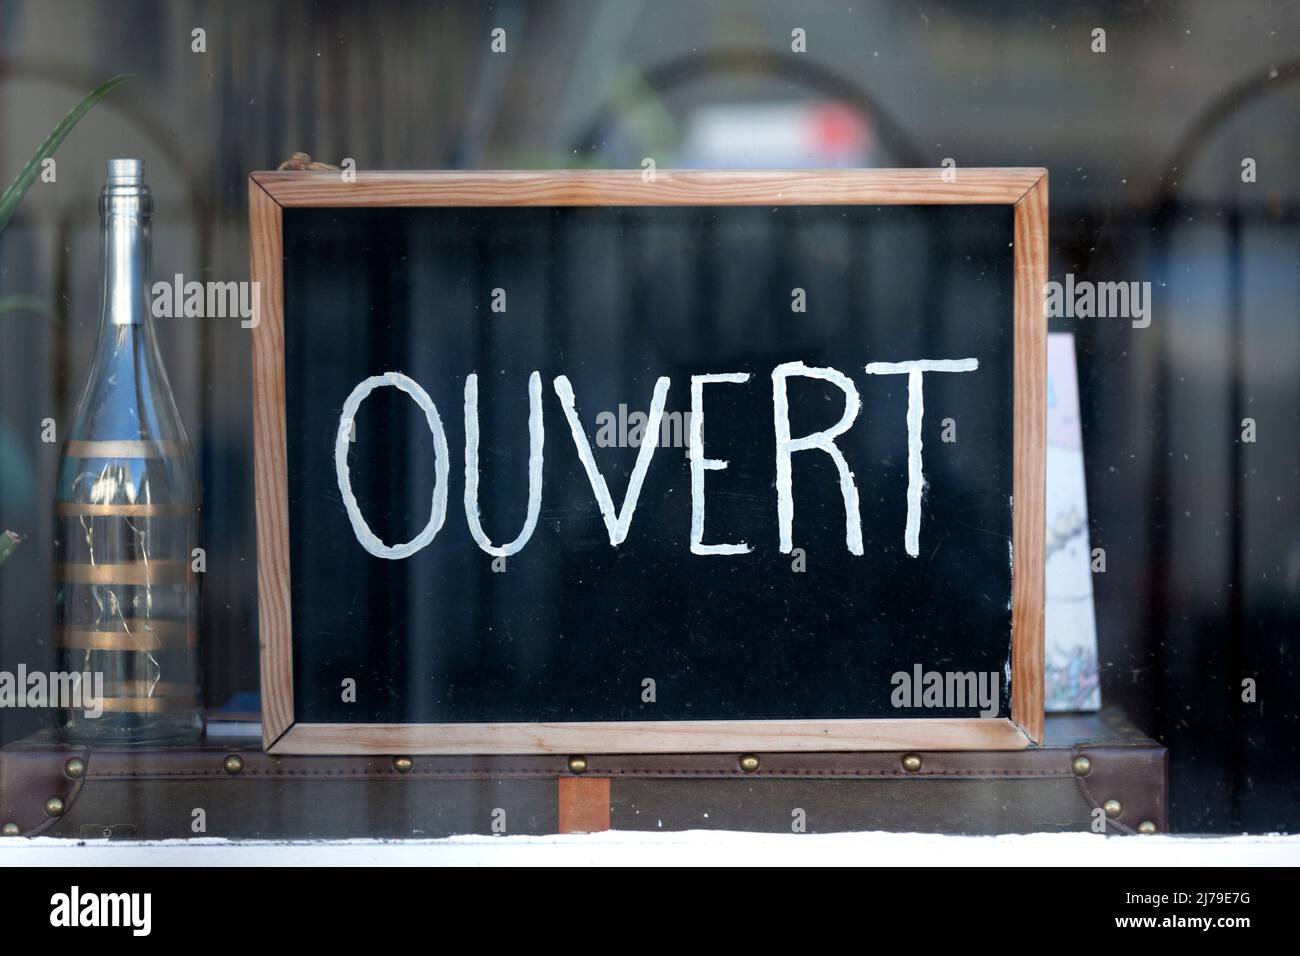 Lavagna nella finestra caso di un ristorante con scritto in francese 'Ouvert', che significa in inglese 'Open'. Foto Stock